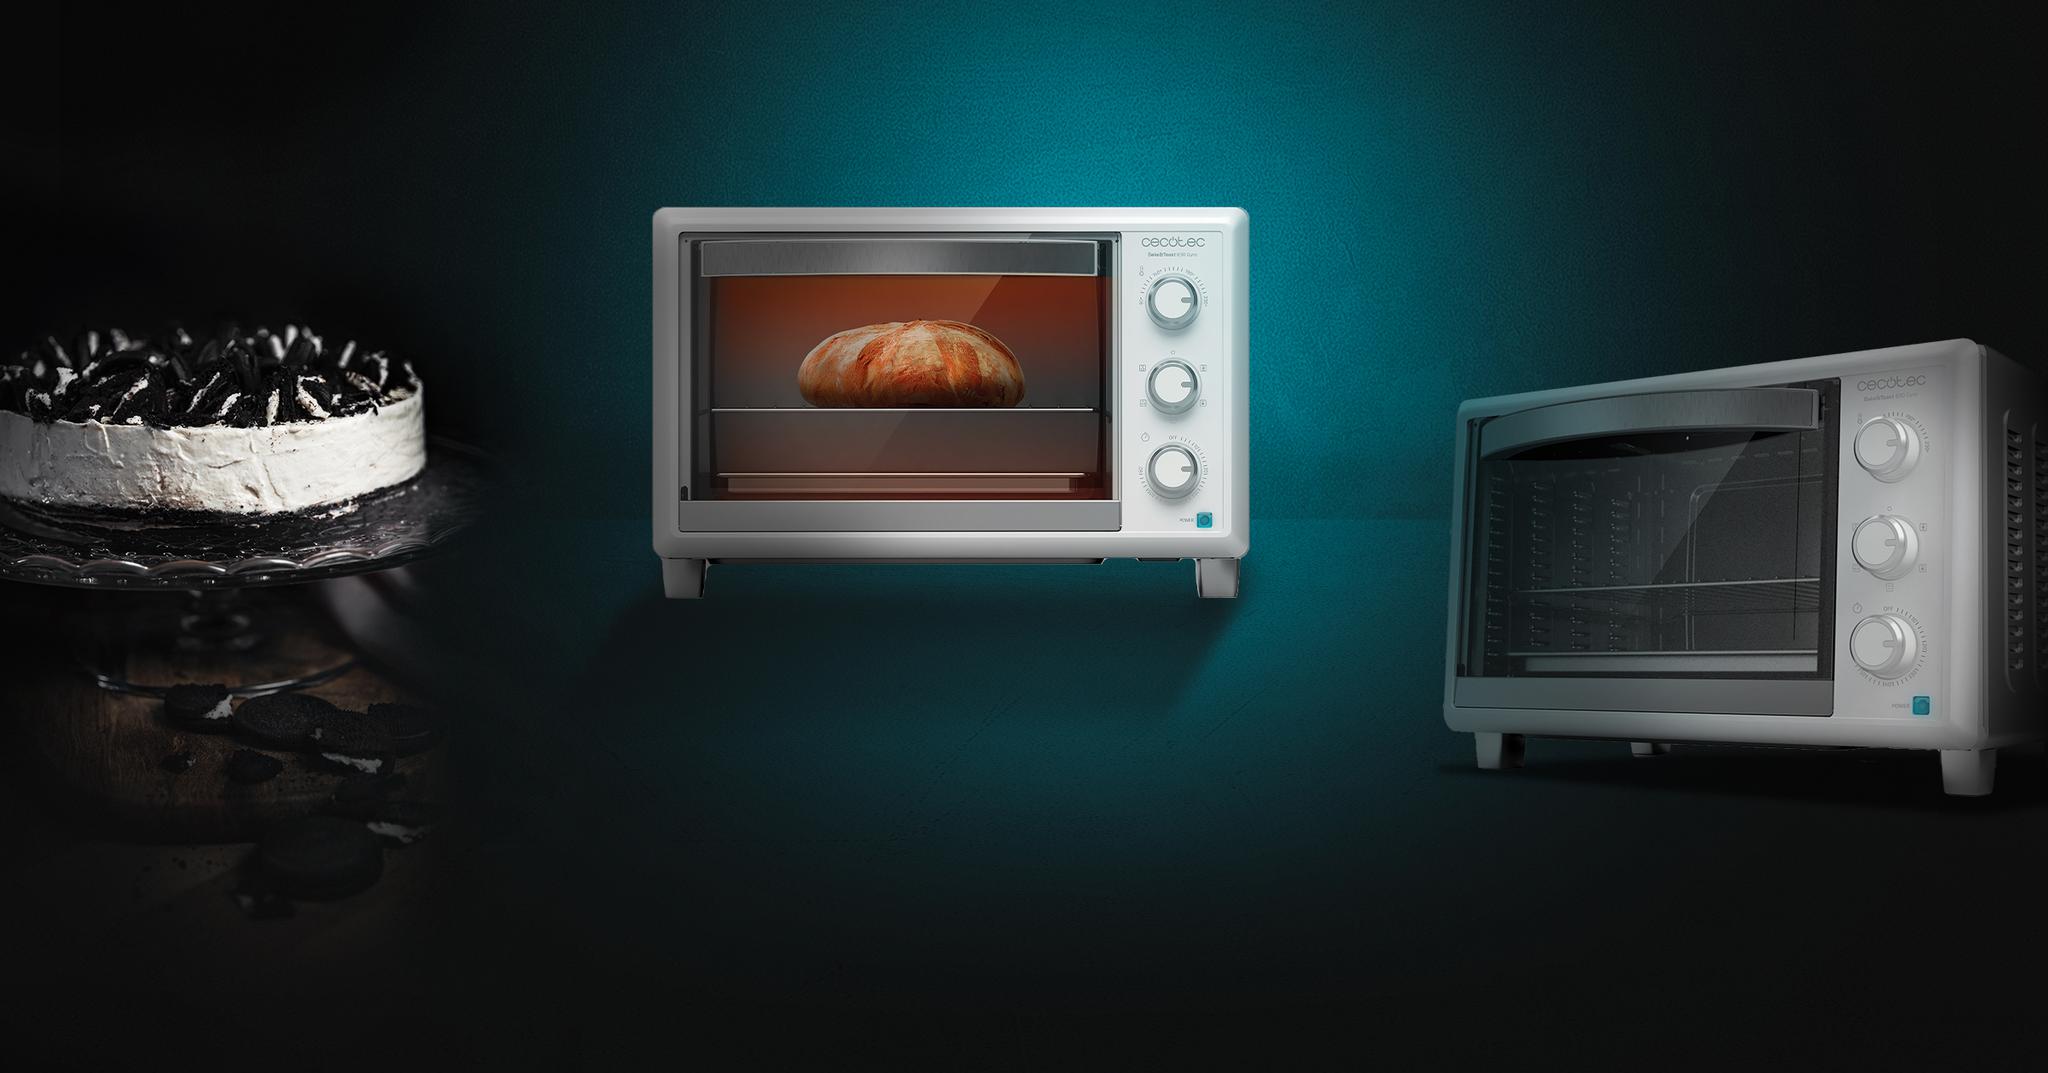 Immagine in primo piano del prodotto Bake&Toast 690 Gyro